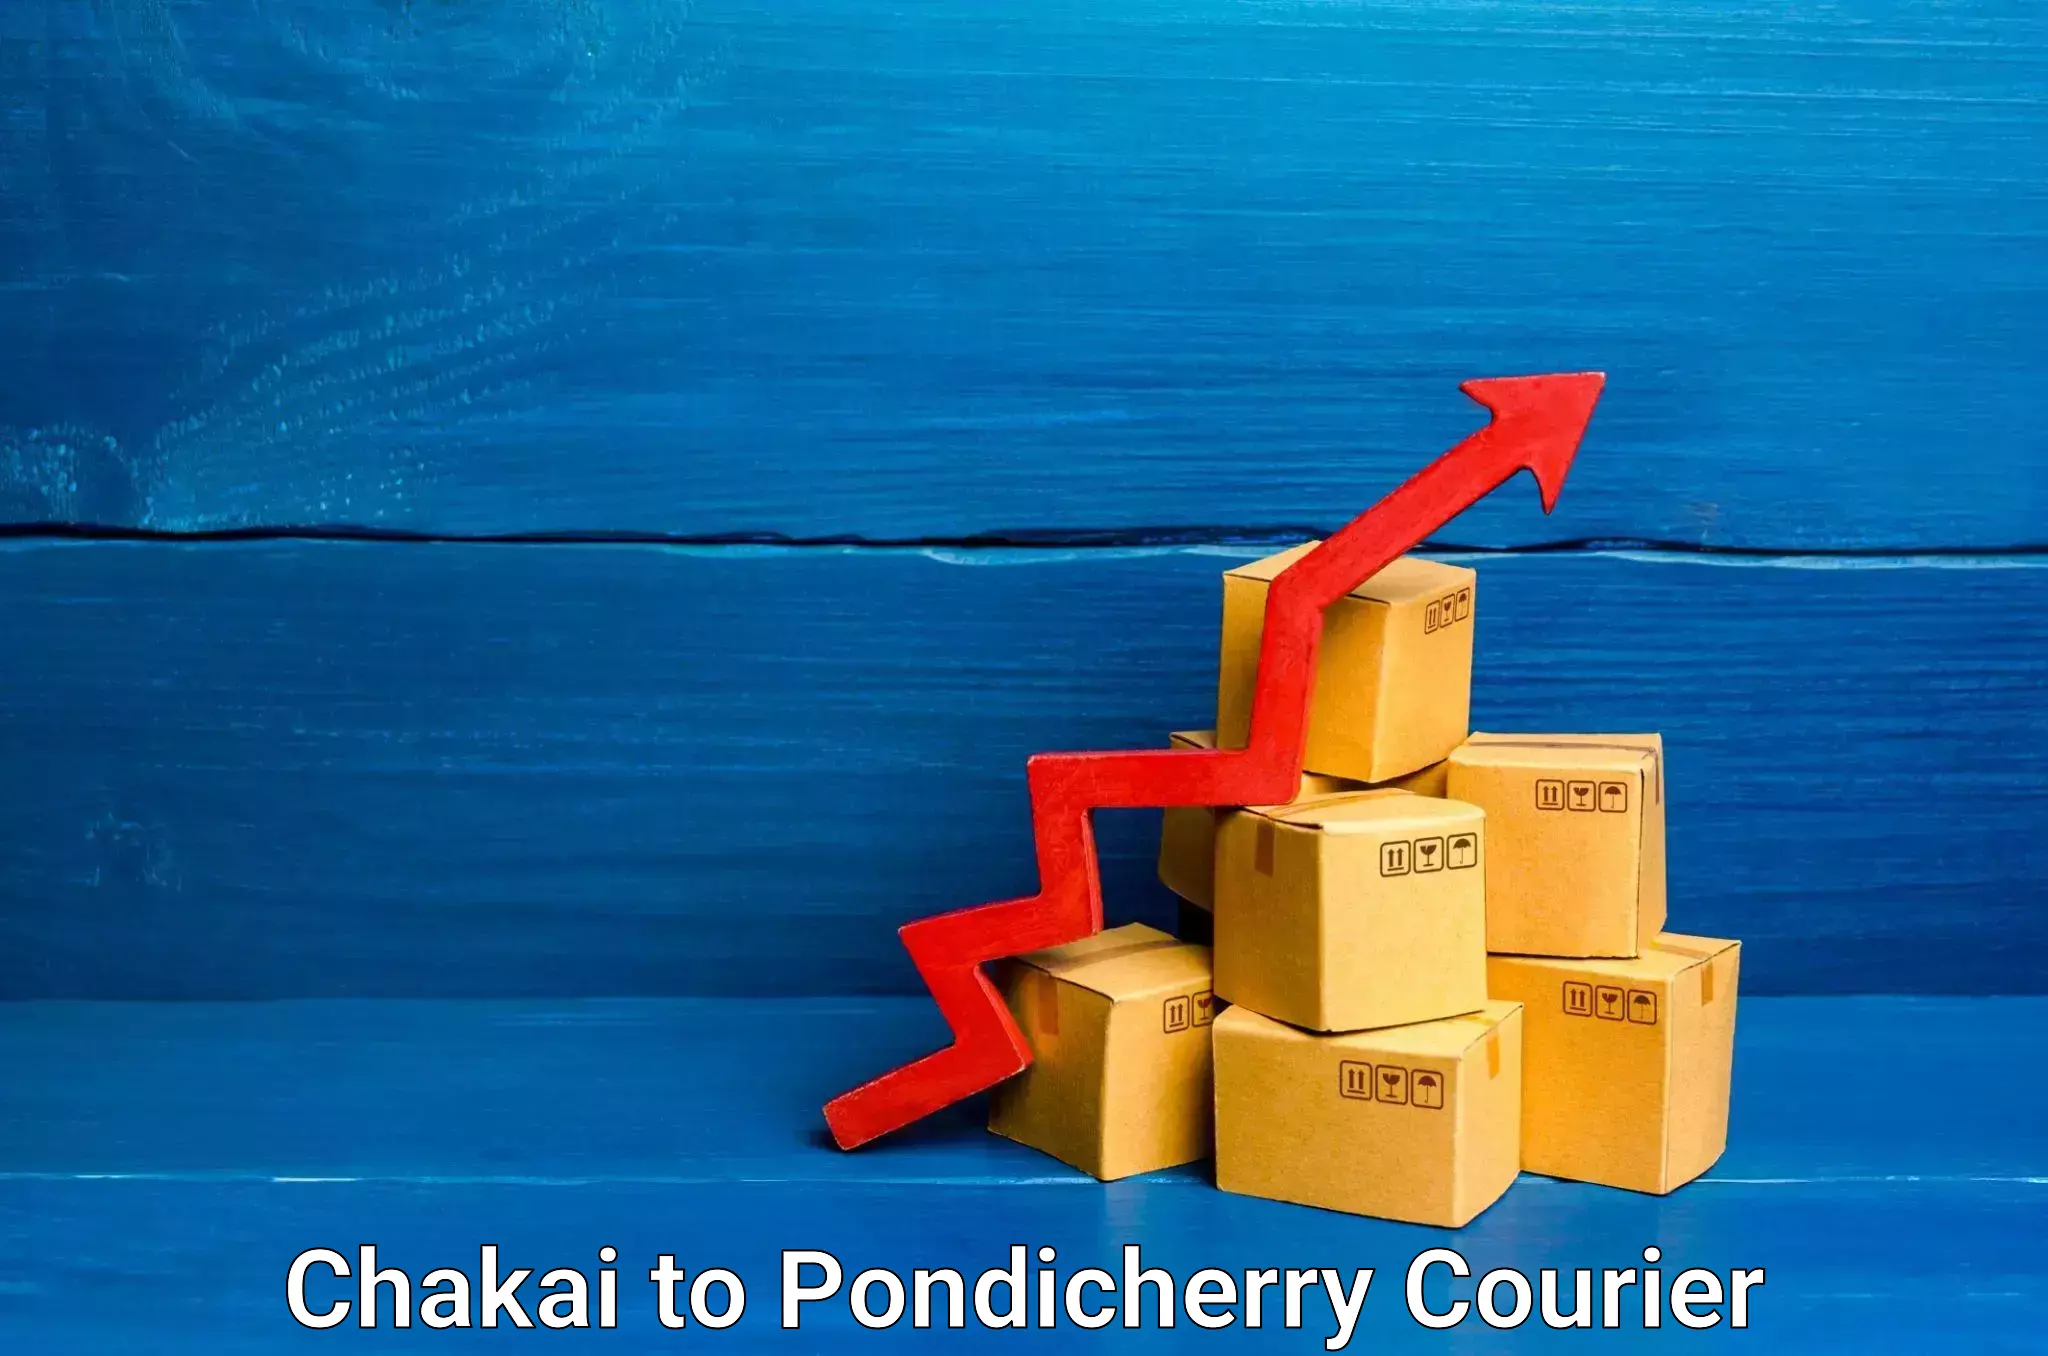 Home moving experts Chakai to Pondicherry